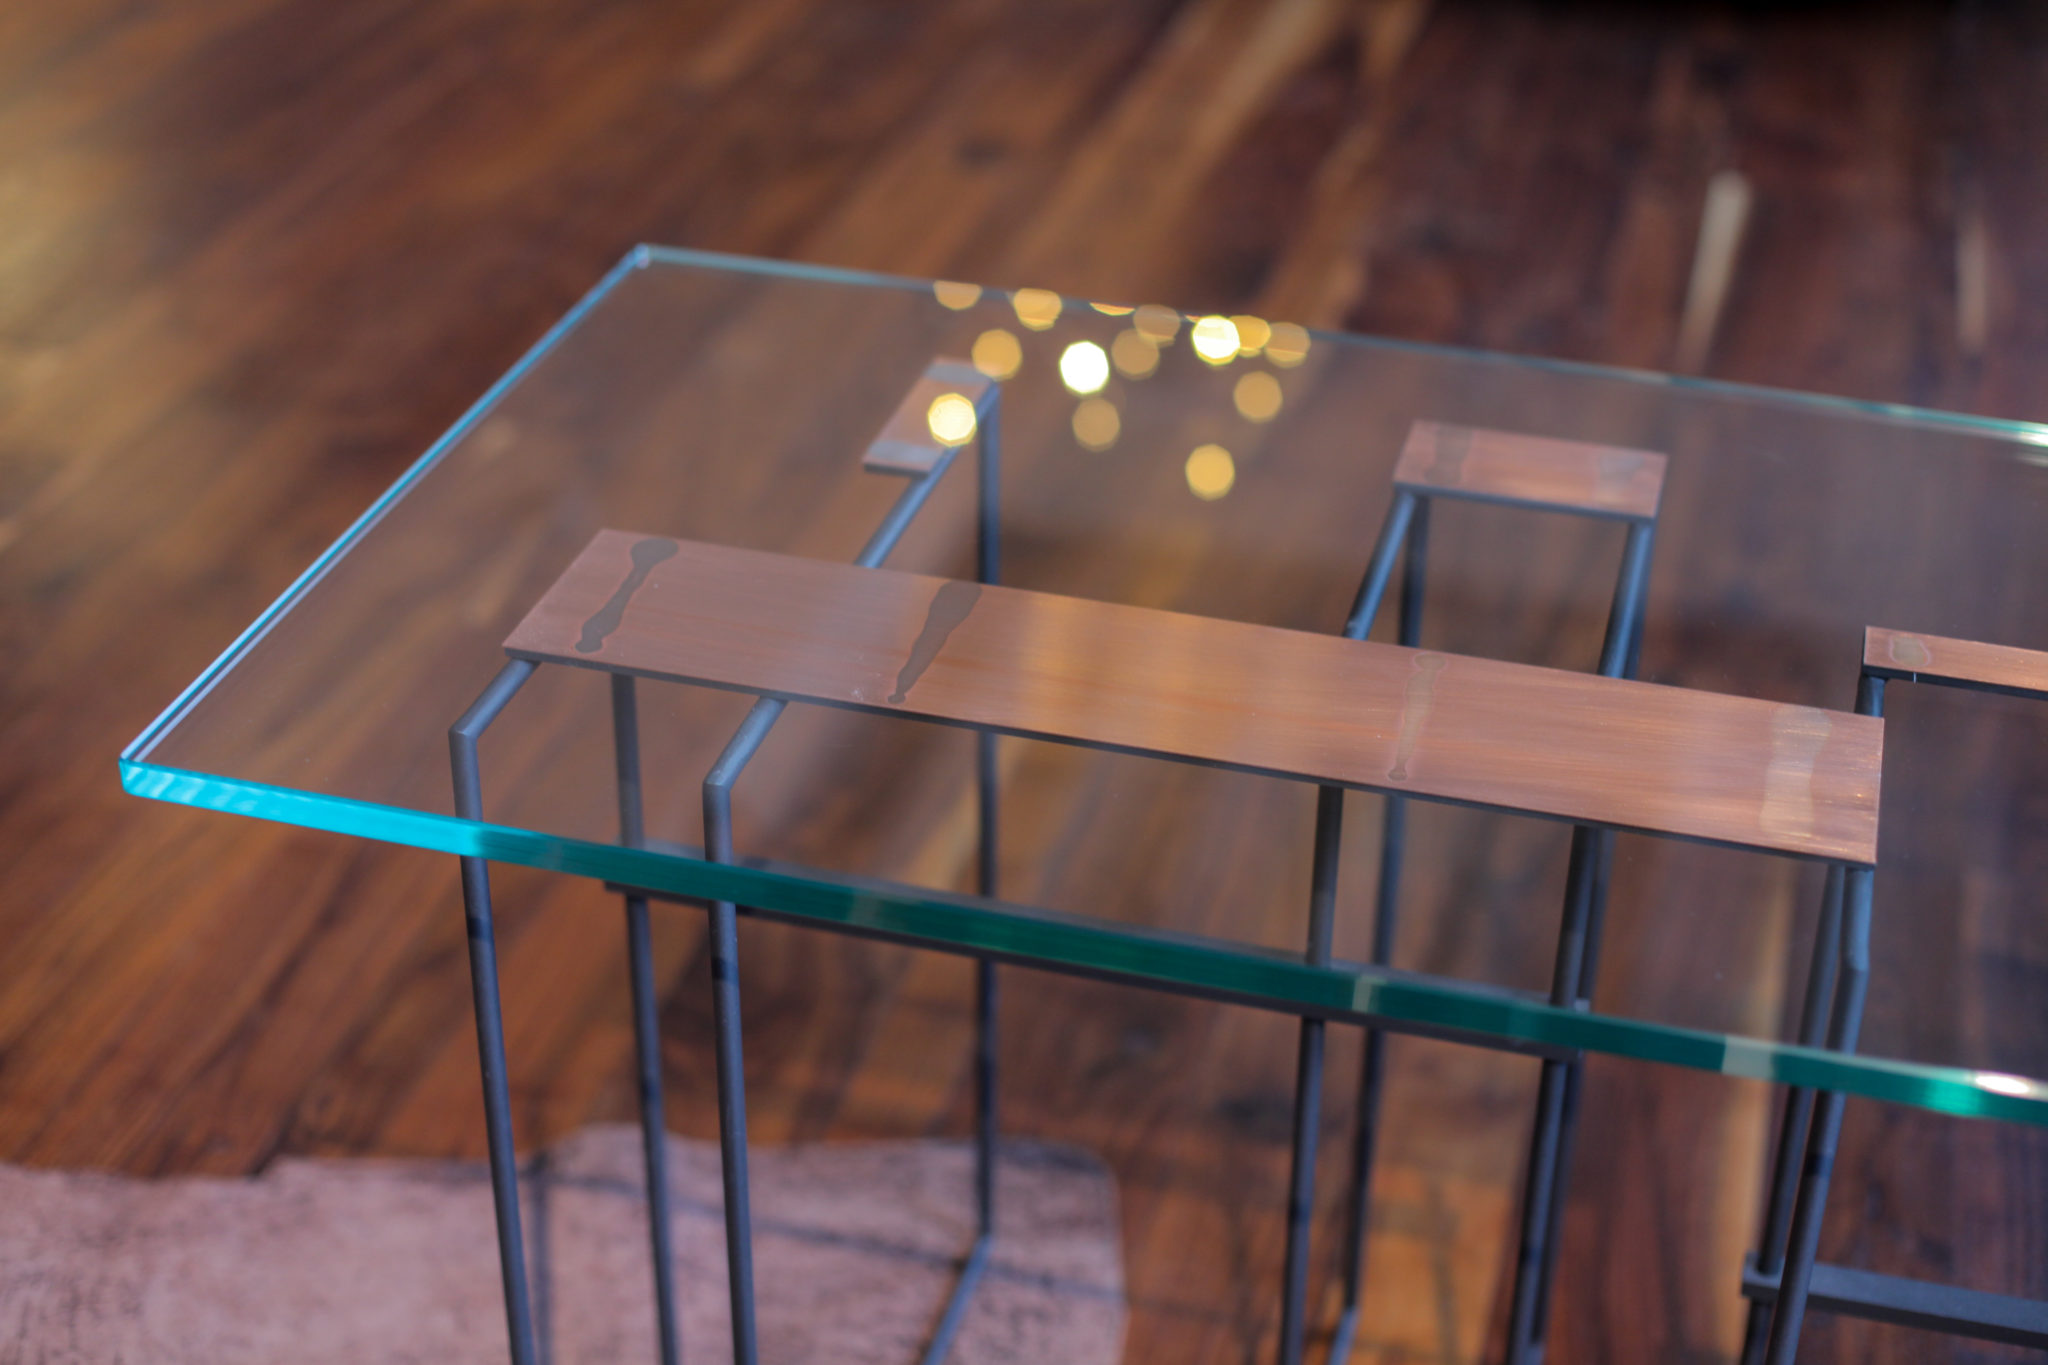 Szklany stolik z miedzianymi elementami na drewnianej podłodze